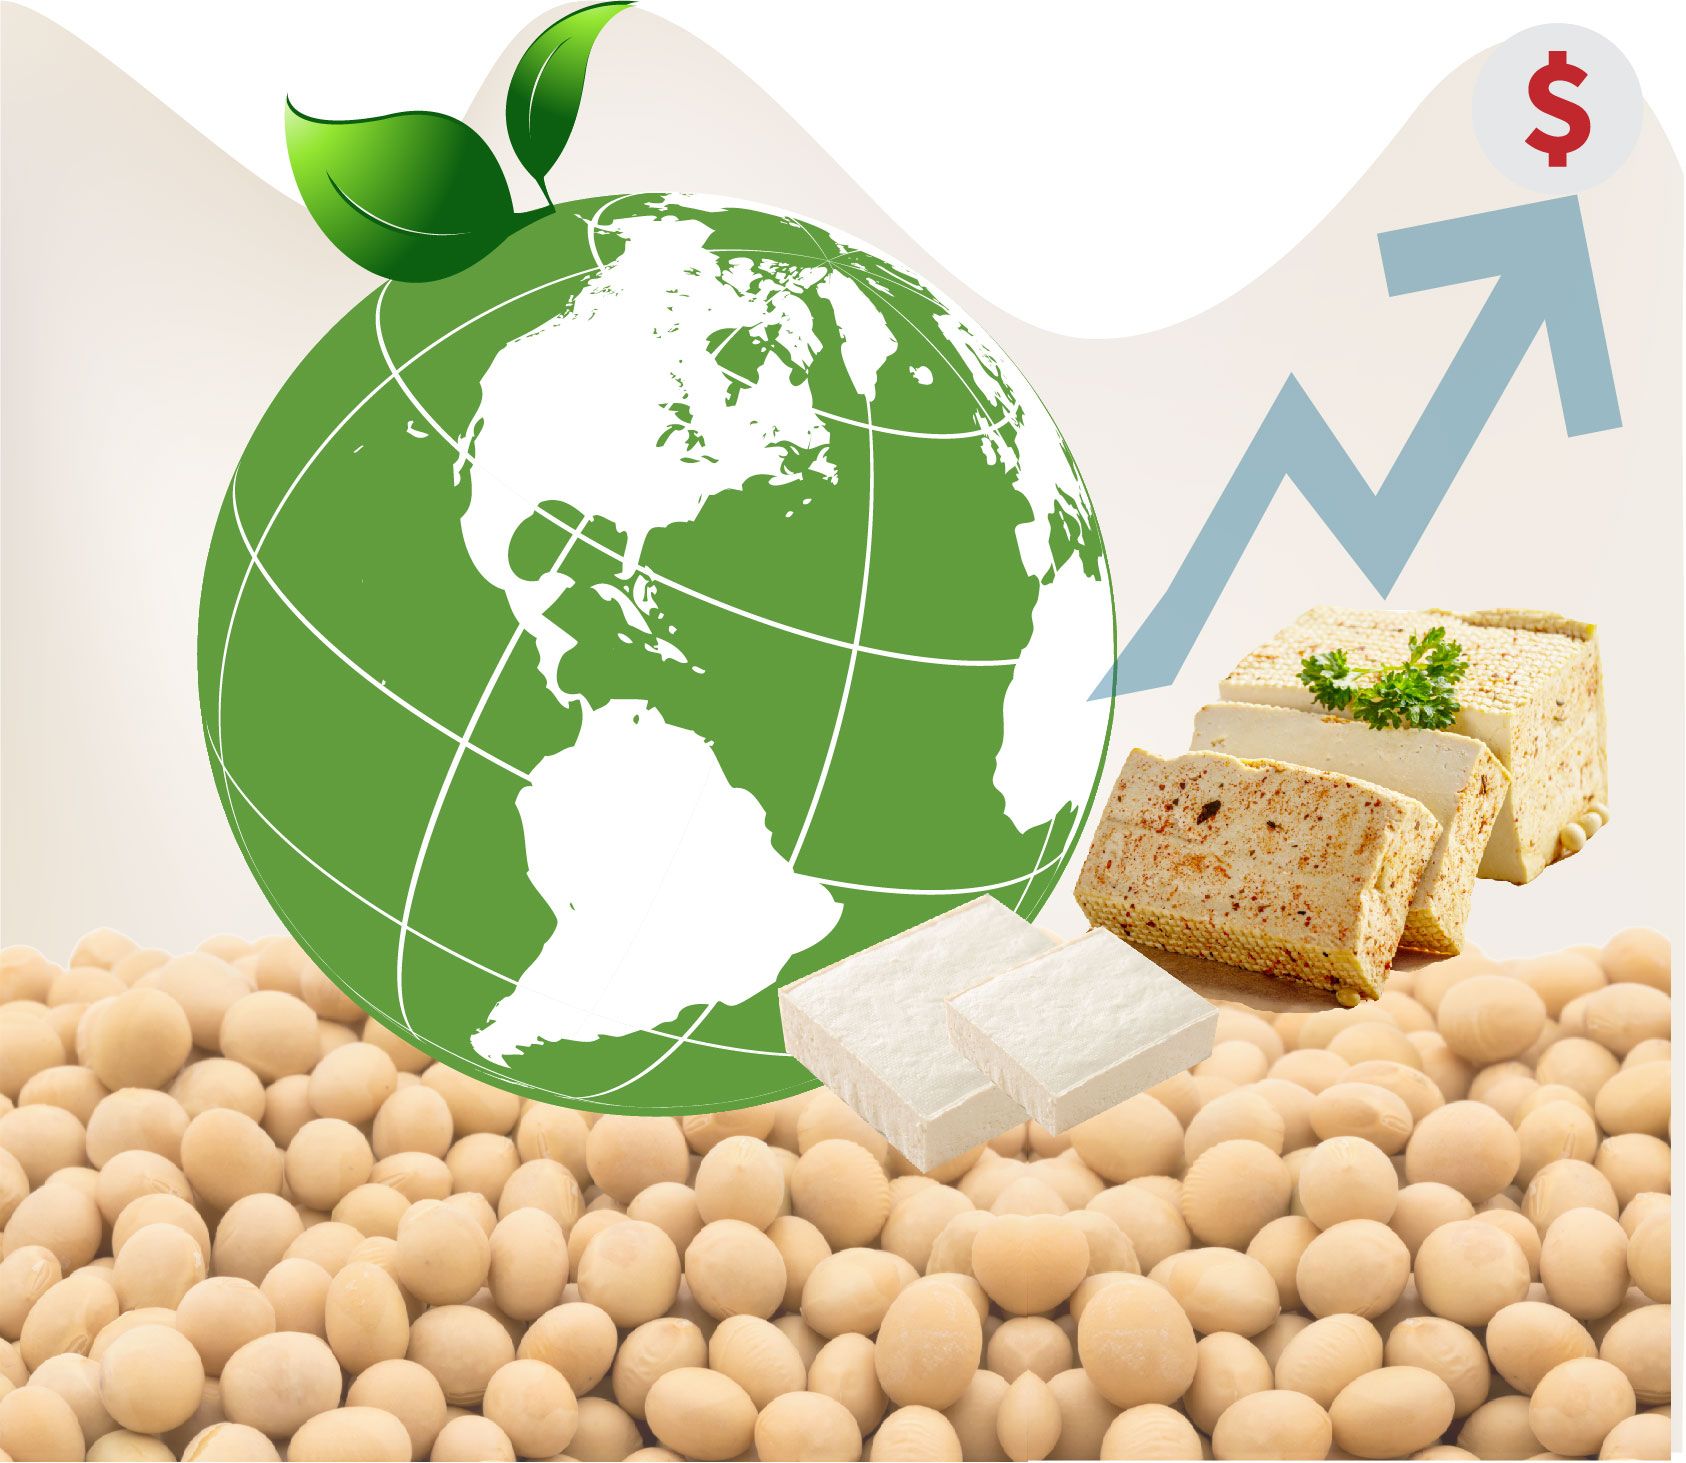 Mercado de tofu, ingesta de proteínas, planta de fabricación de tofu y leche de soja